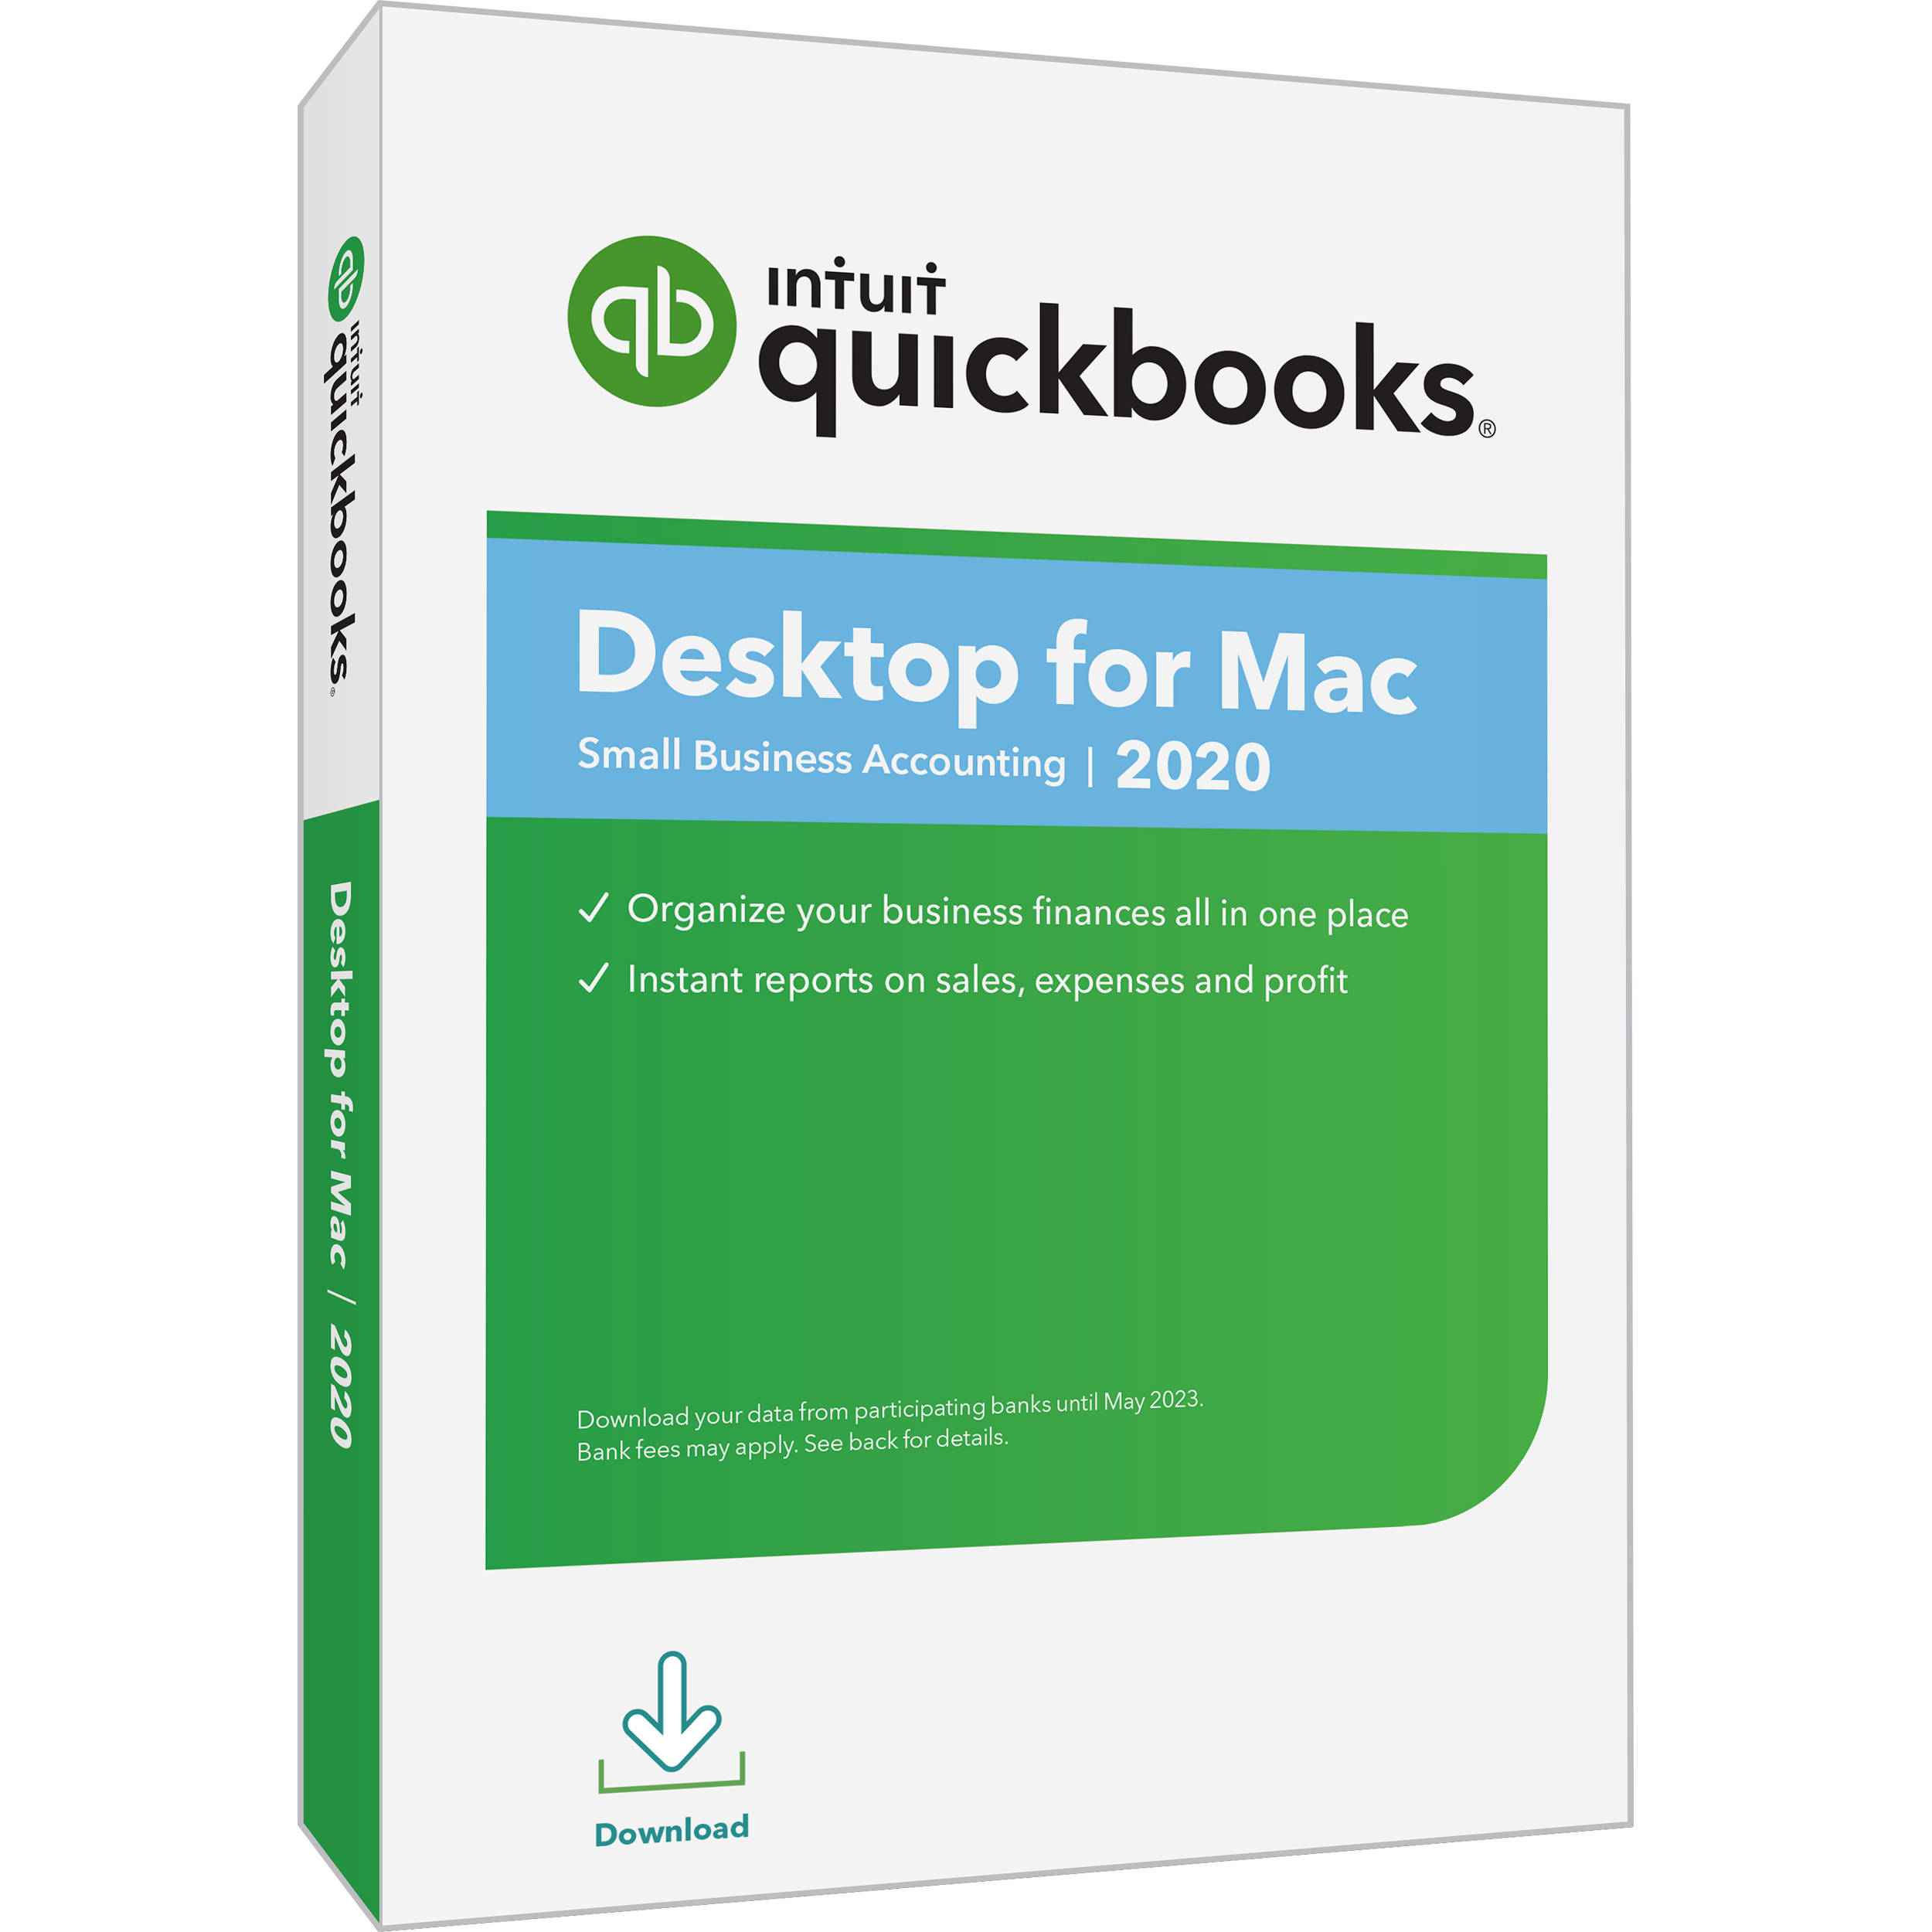 quickbooks for mac reimbursable expense